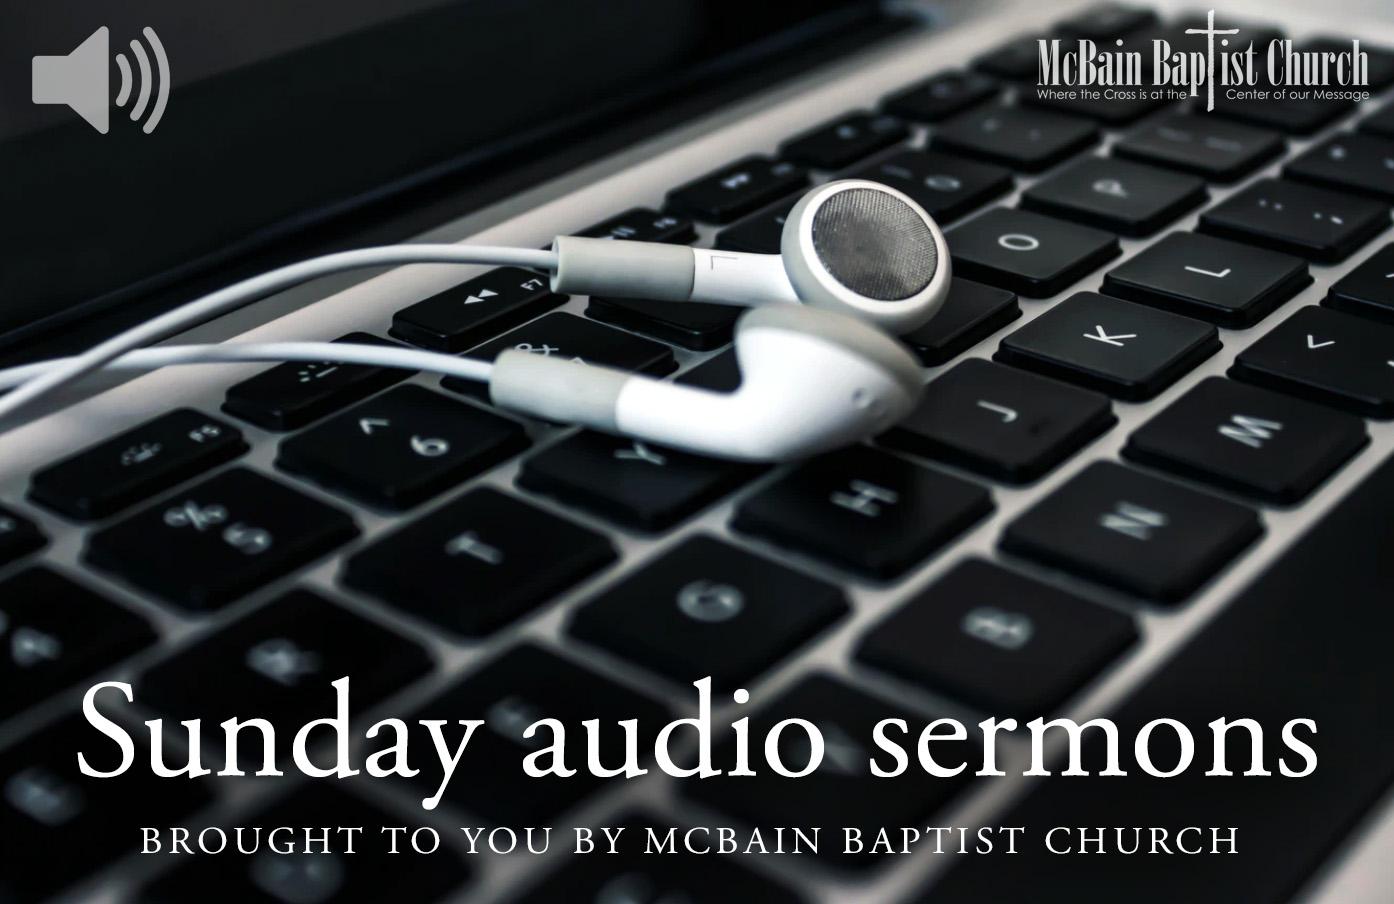 Sunday_audio_sermons_mcbain_baptist_church